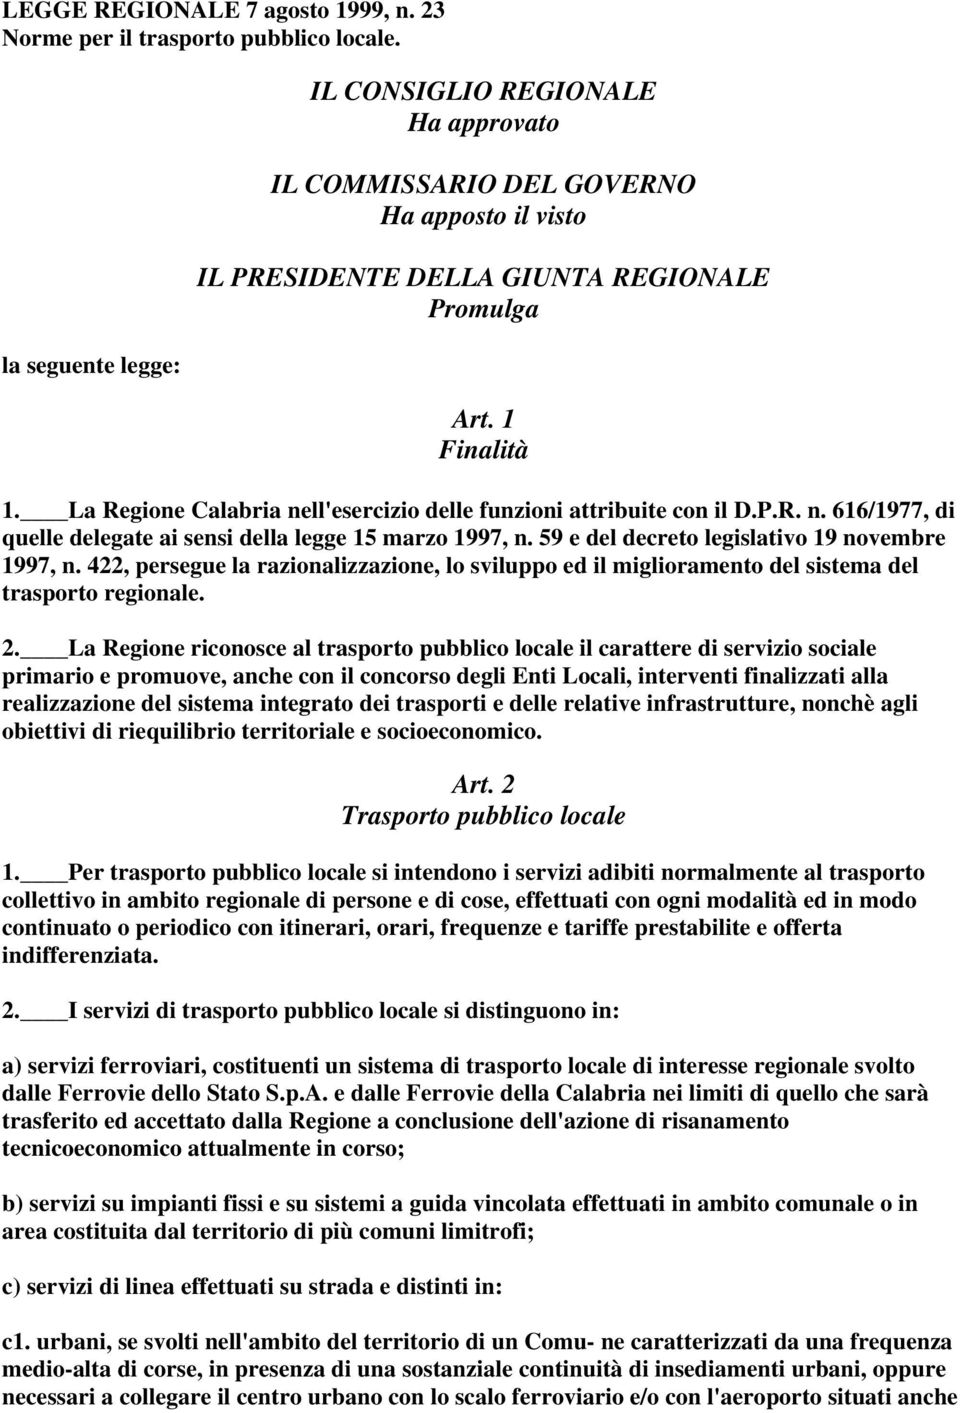 La Regione Calabria nell'esercizio delle funzioni attribuite con il D.P.R. n. 616/1977, di quelle delegate ai sensi della legge 15 marzo 1997, n. 59 e del decreto legislativo 19 novembre 1997, n.